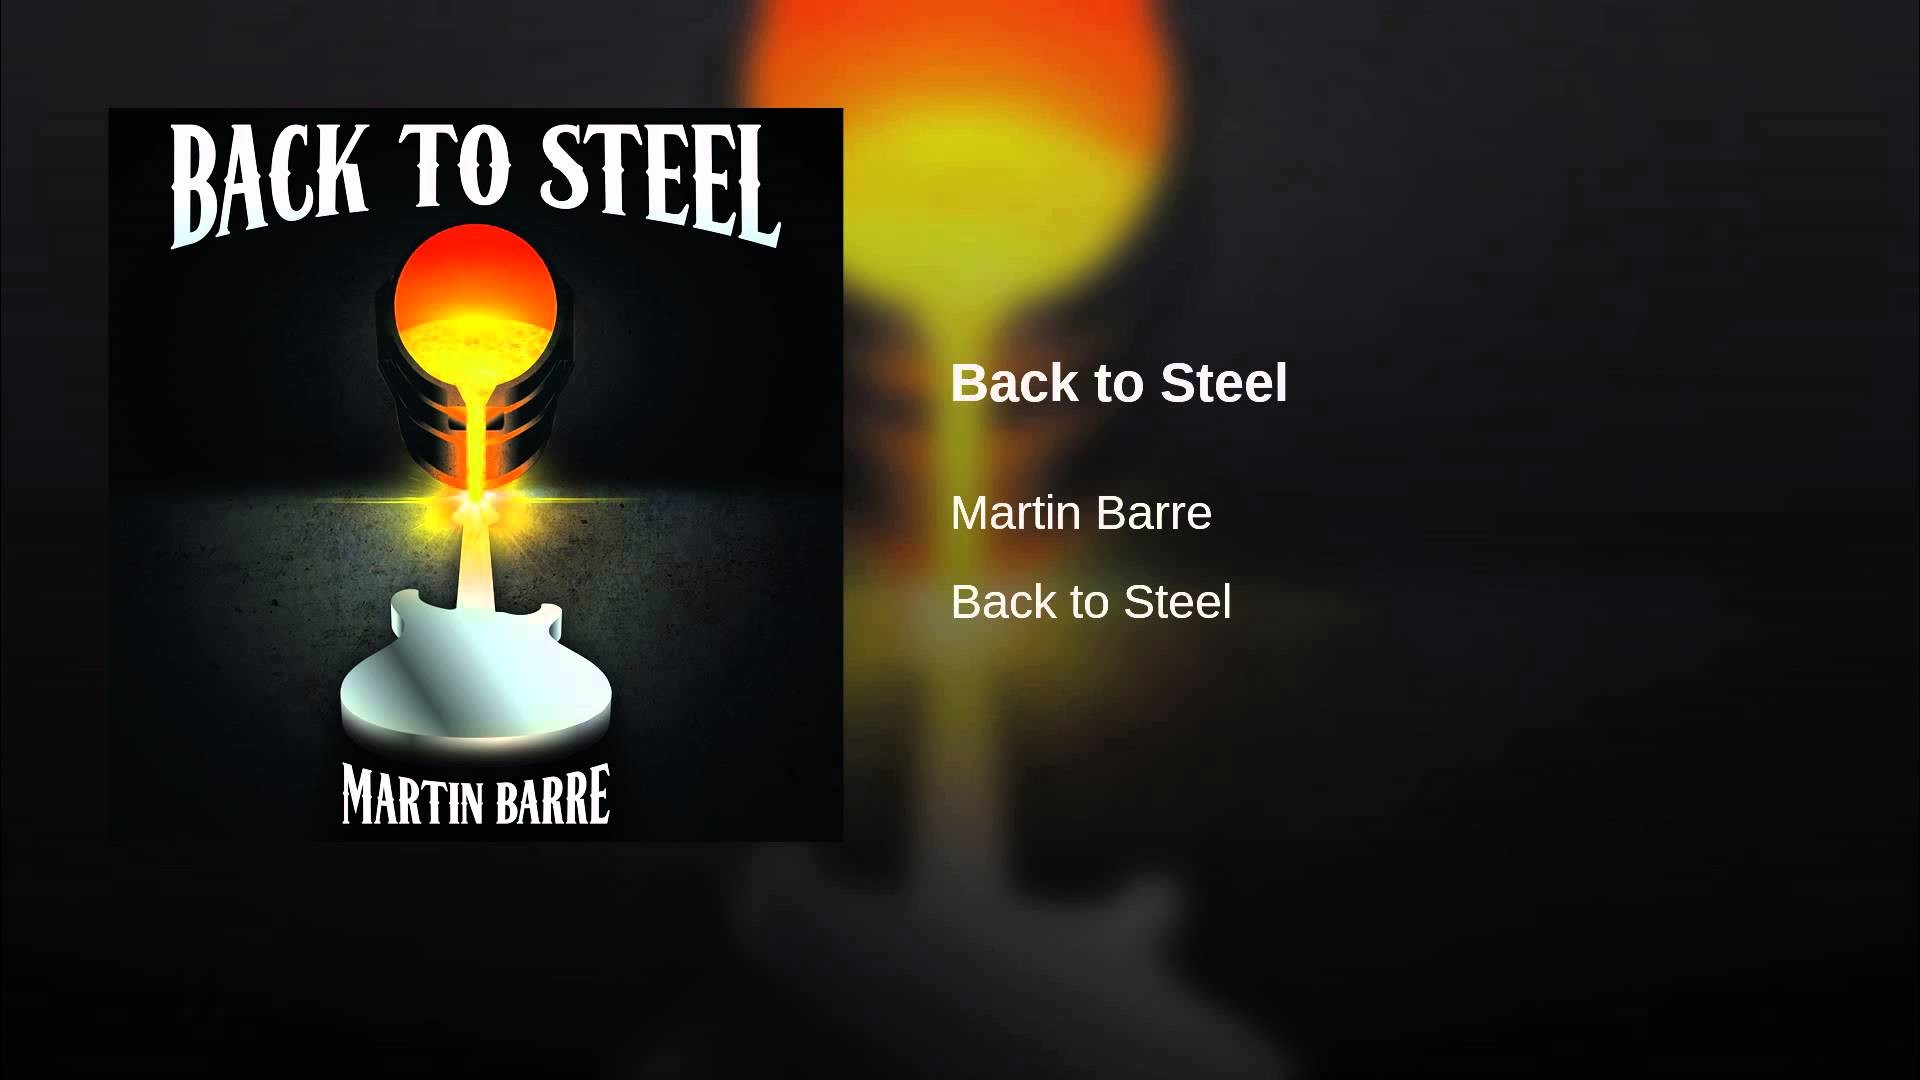 1920x1080 Martin Barre: Jethro Tull guitarist talks about new solo album 'Back